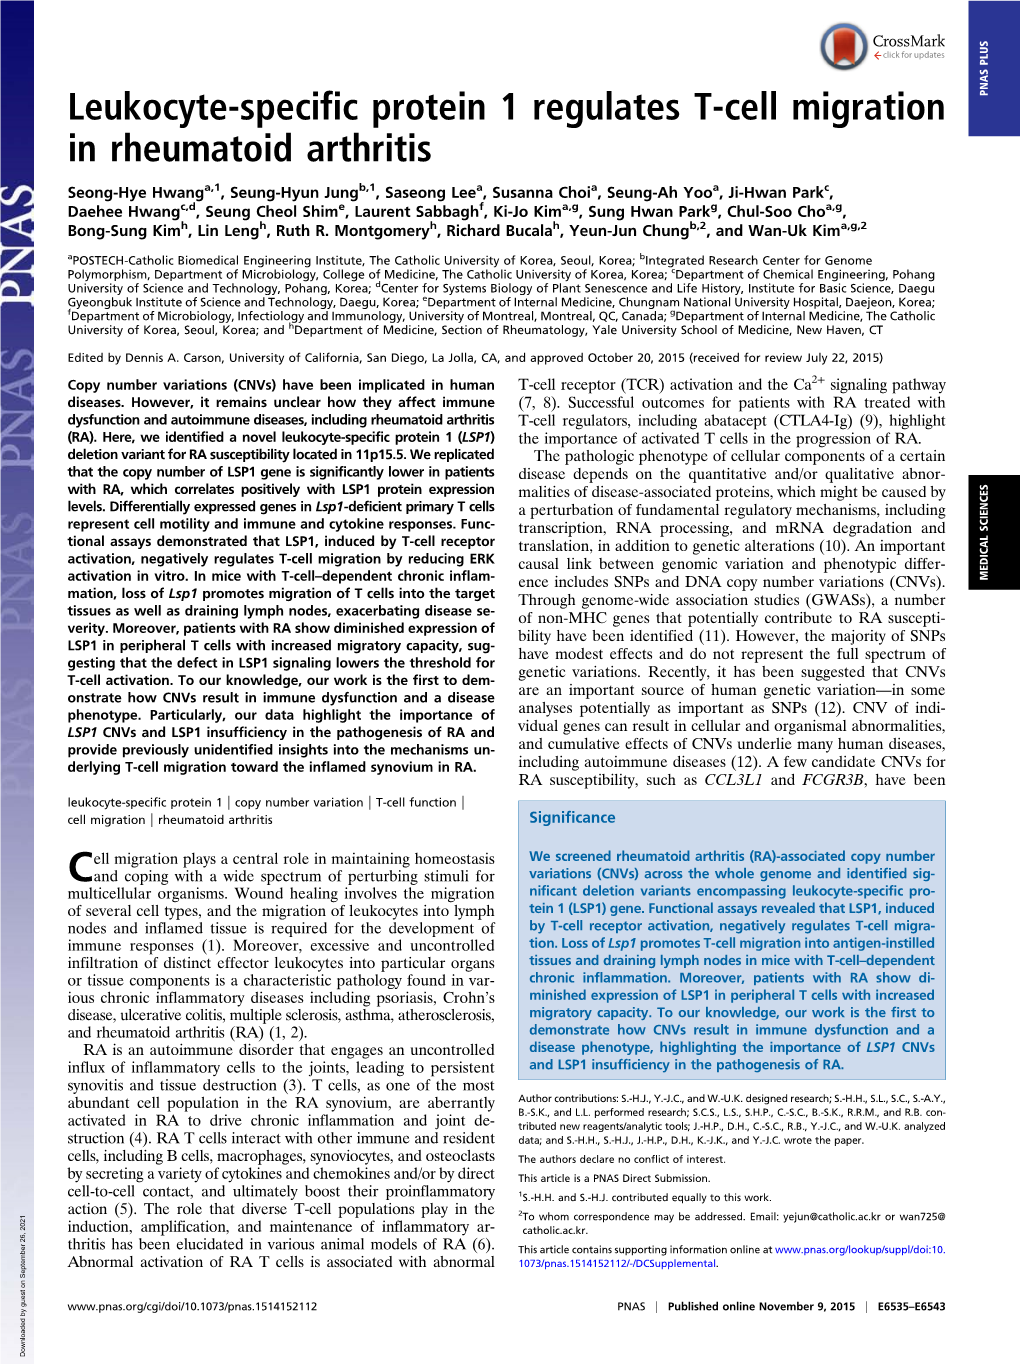 Leukocyte-Specific Protein 1 Regulates T-Cell Migration in Rheumatoid Arthritis